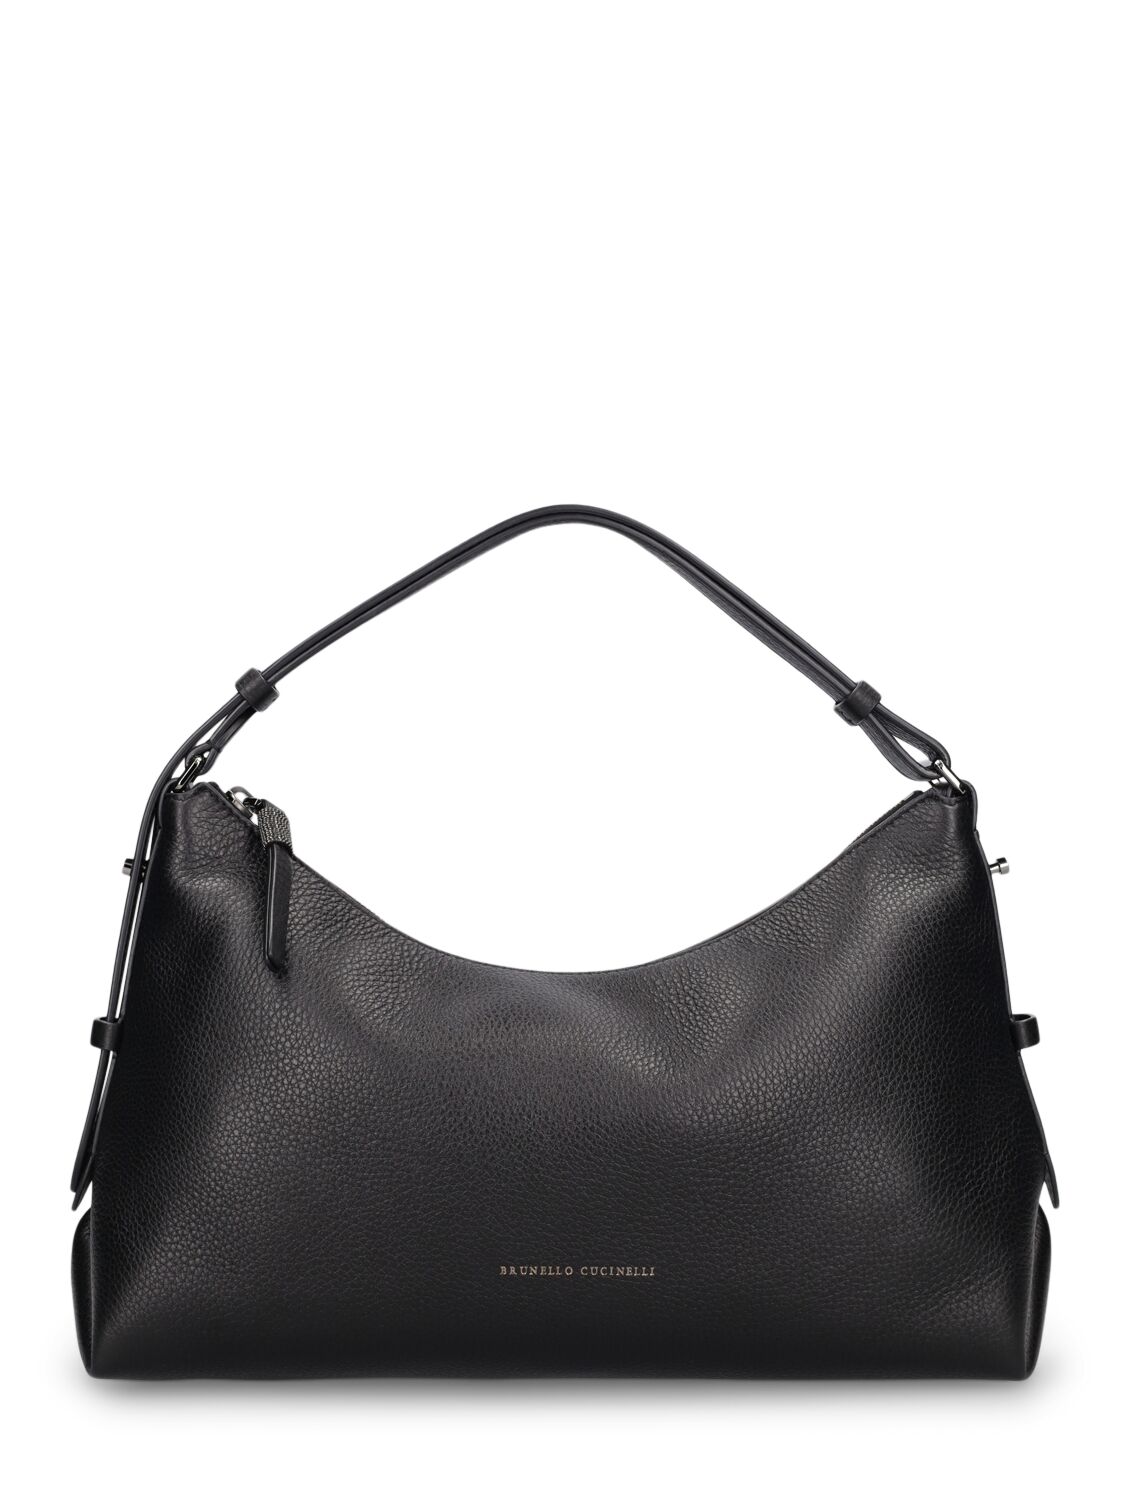 Brunello Cucinelli Large Grained Leather Shoulder Bag In Black